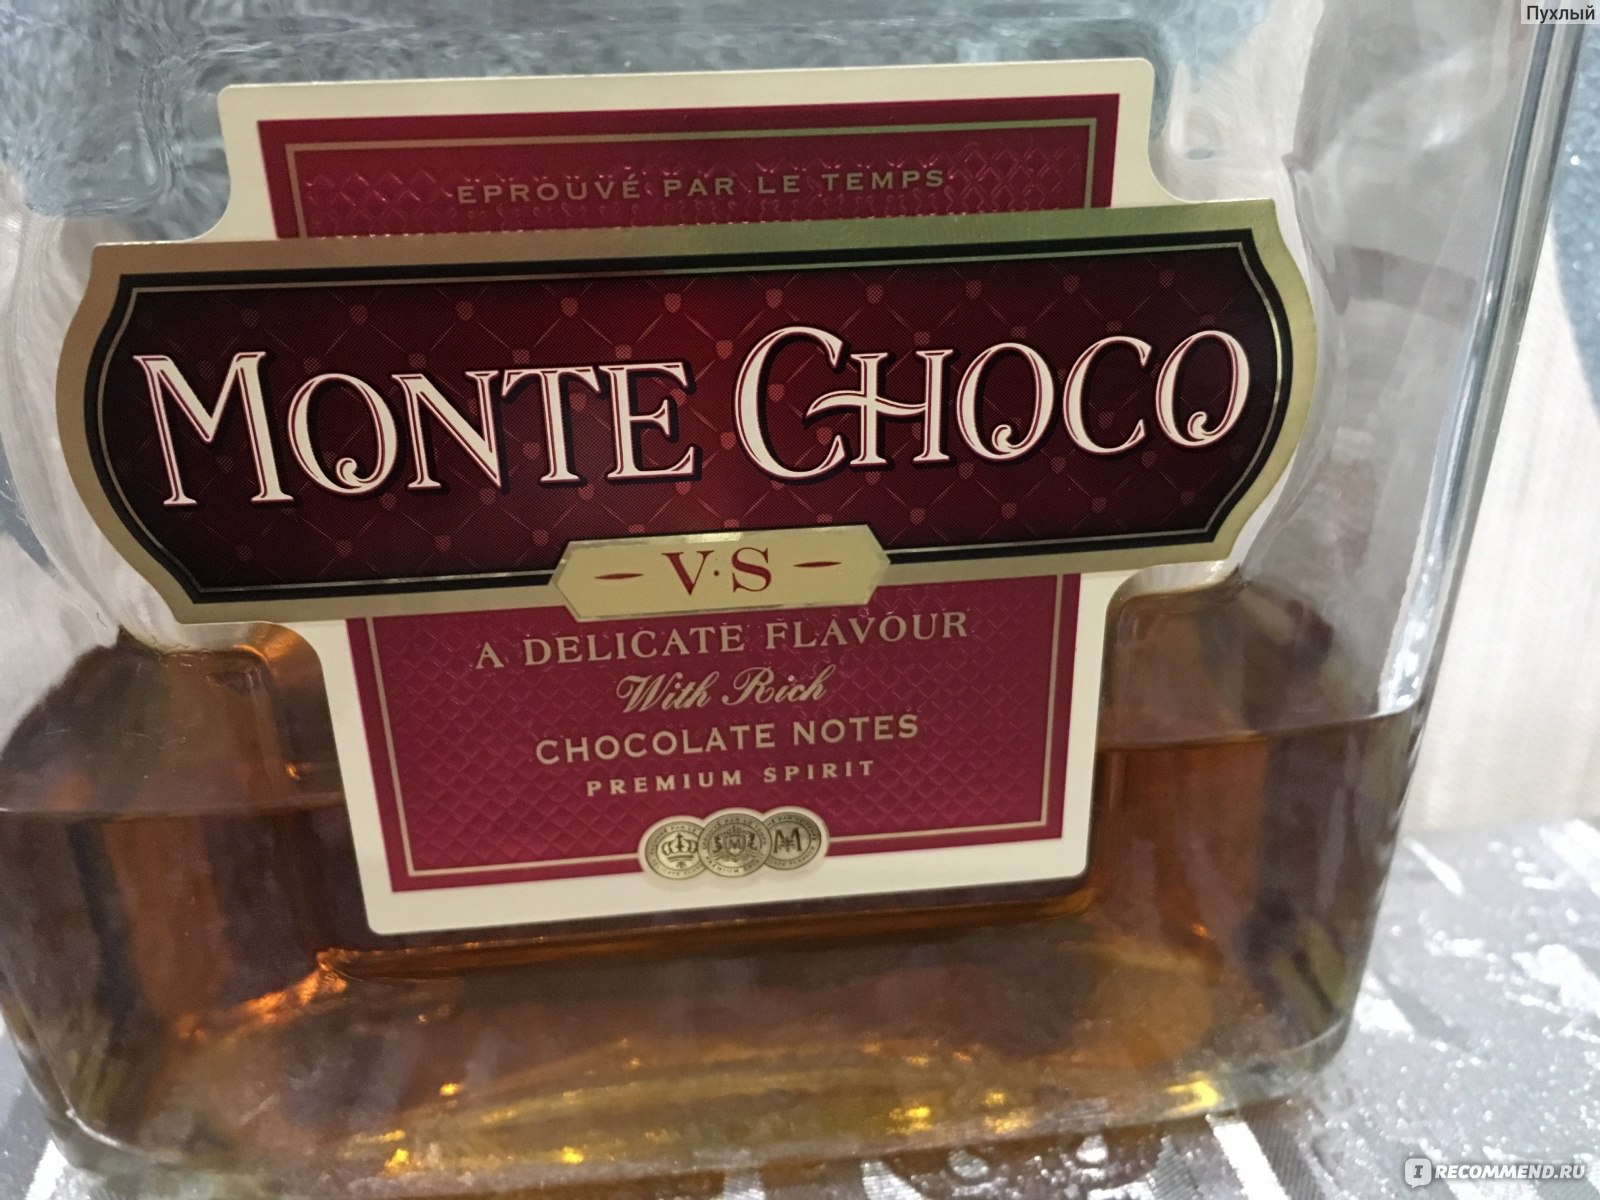 Шоколадный коньяк Монте шоко